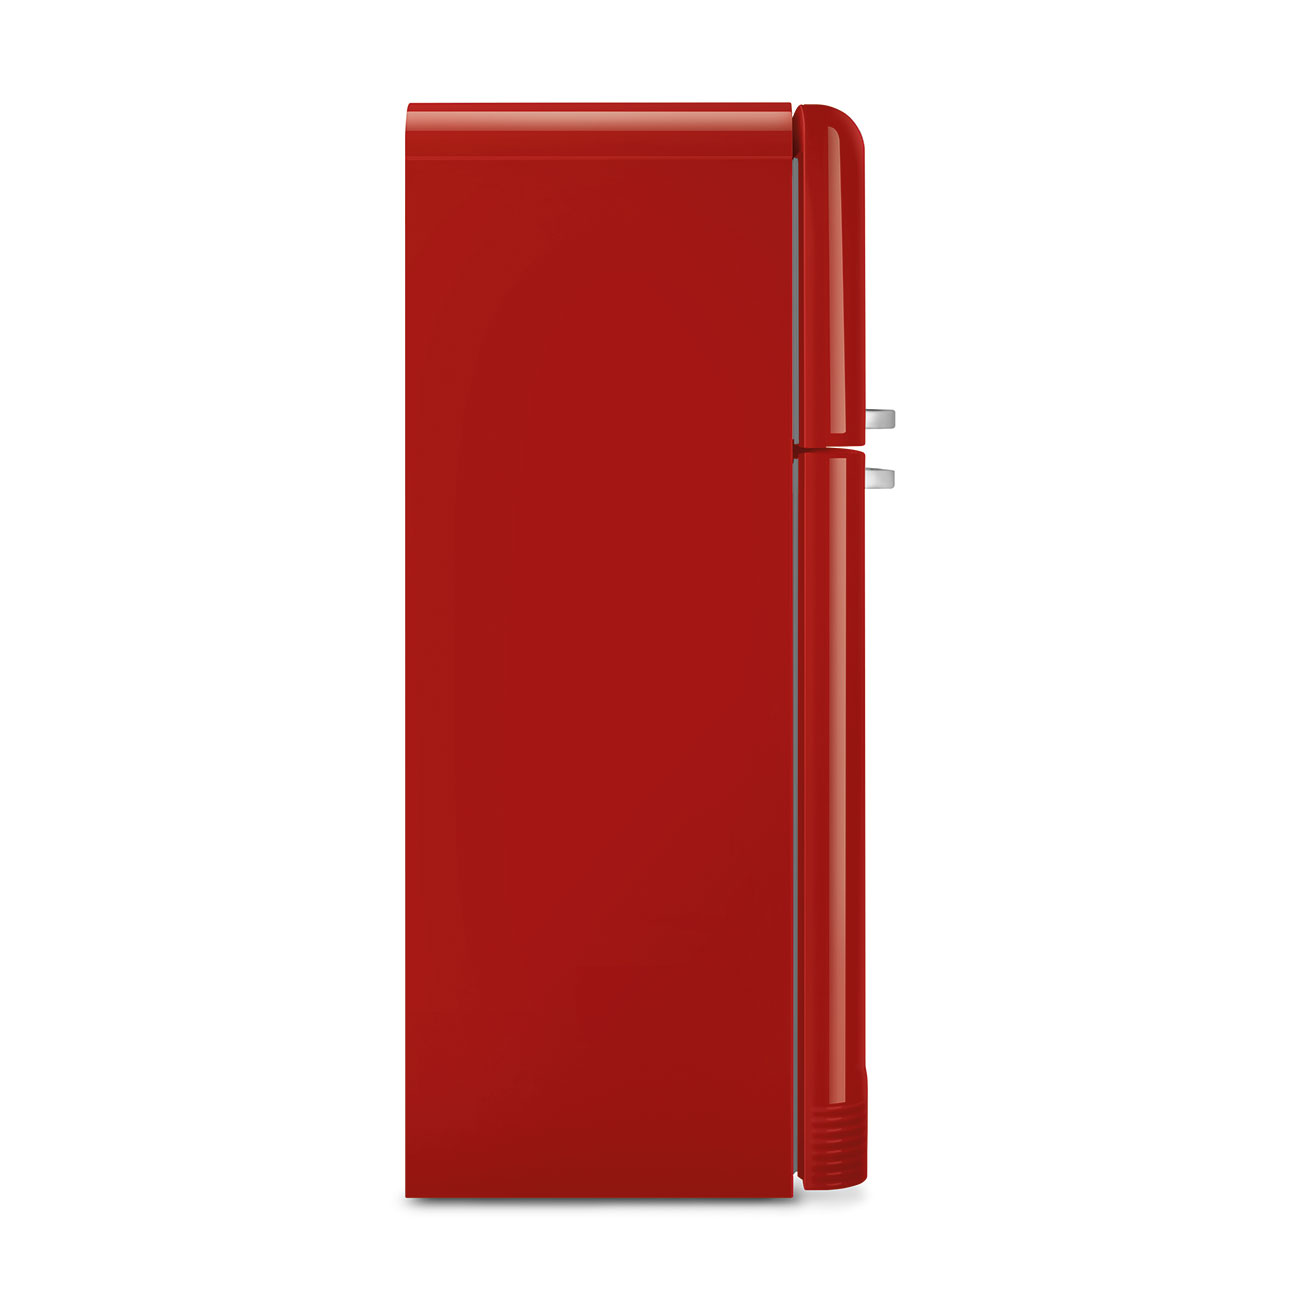 Red refrigerator - Smeg_6